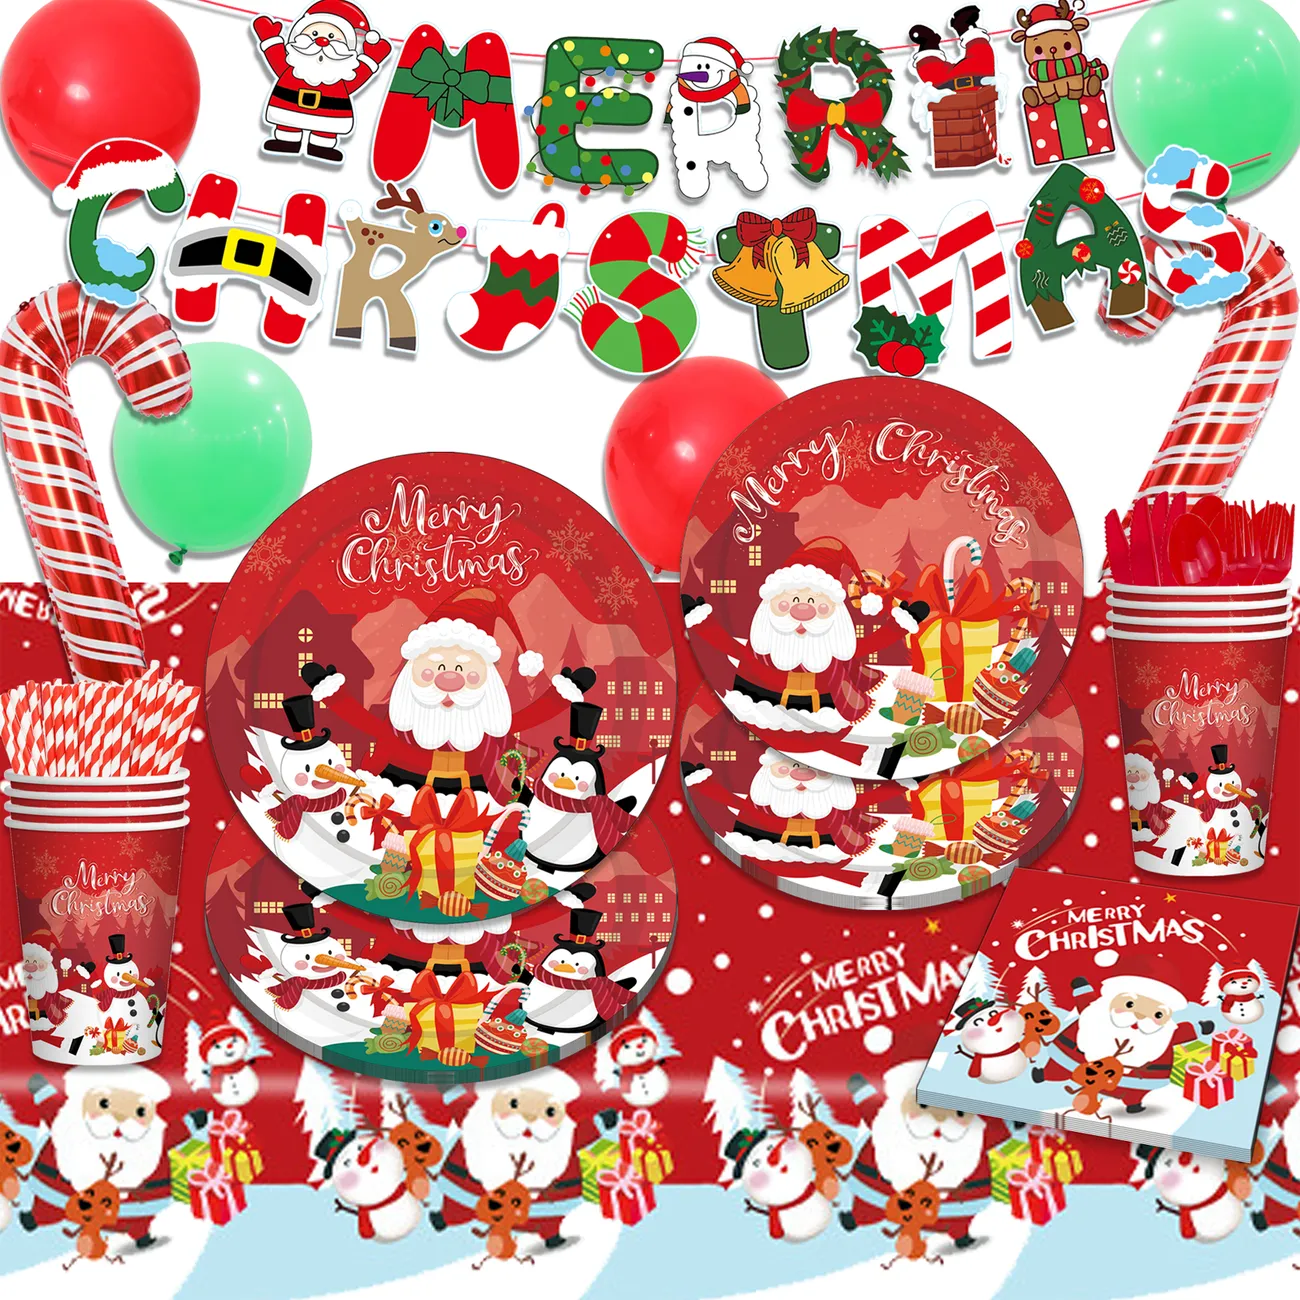 Combo Red Cartoon Santa Claus Theme Holiday Party Decoration Set: platos de papel, tazas, mantel, cubiertos y globos Rojo / Blanco big image 1